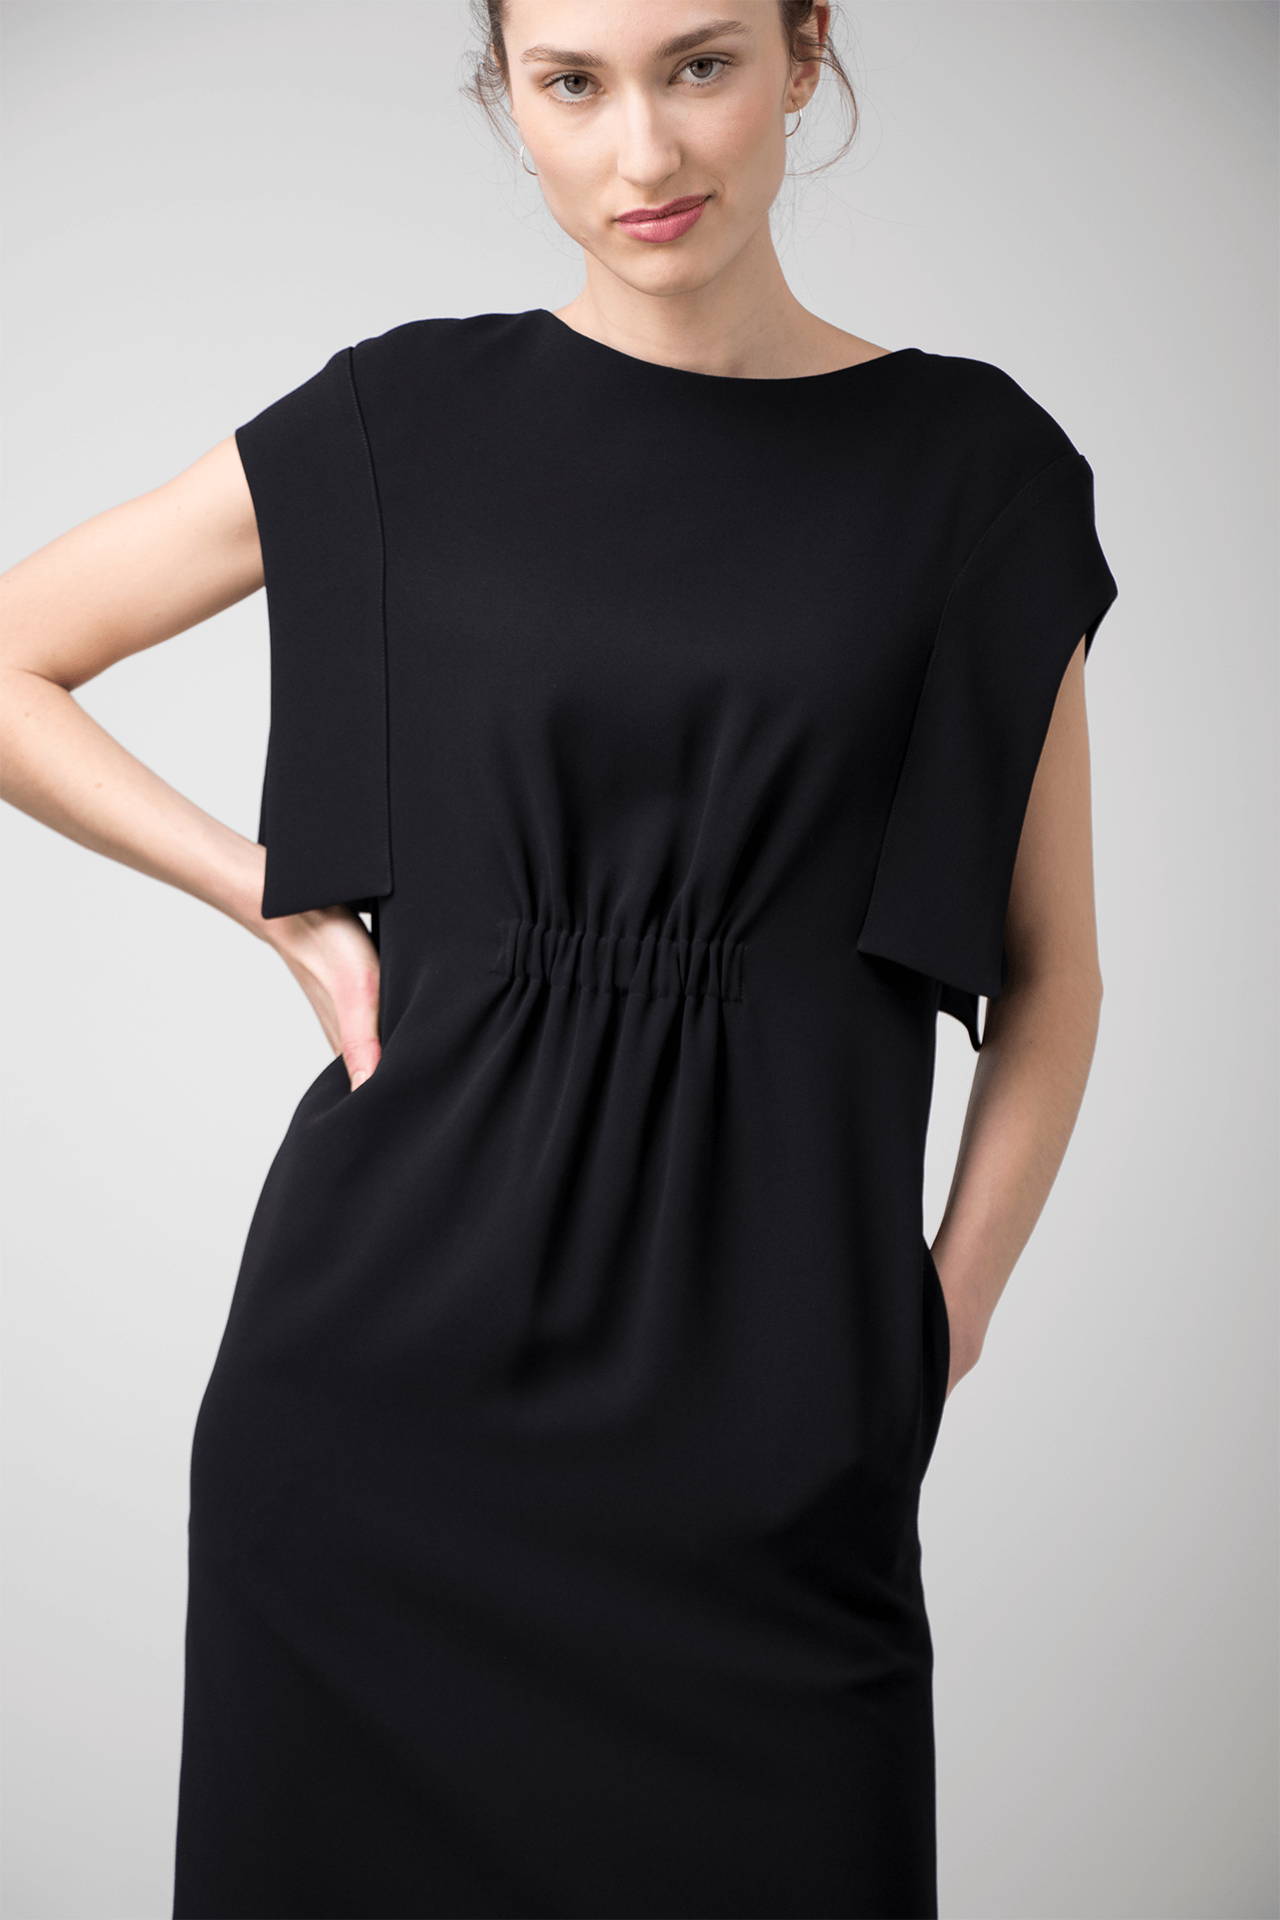 Choose a little black dress or… a little burgundy dress